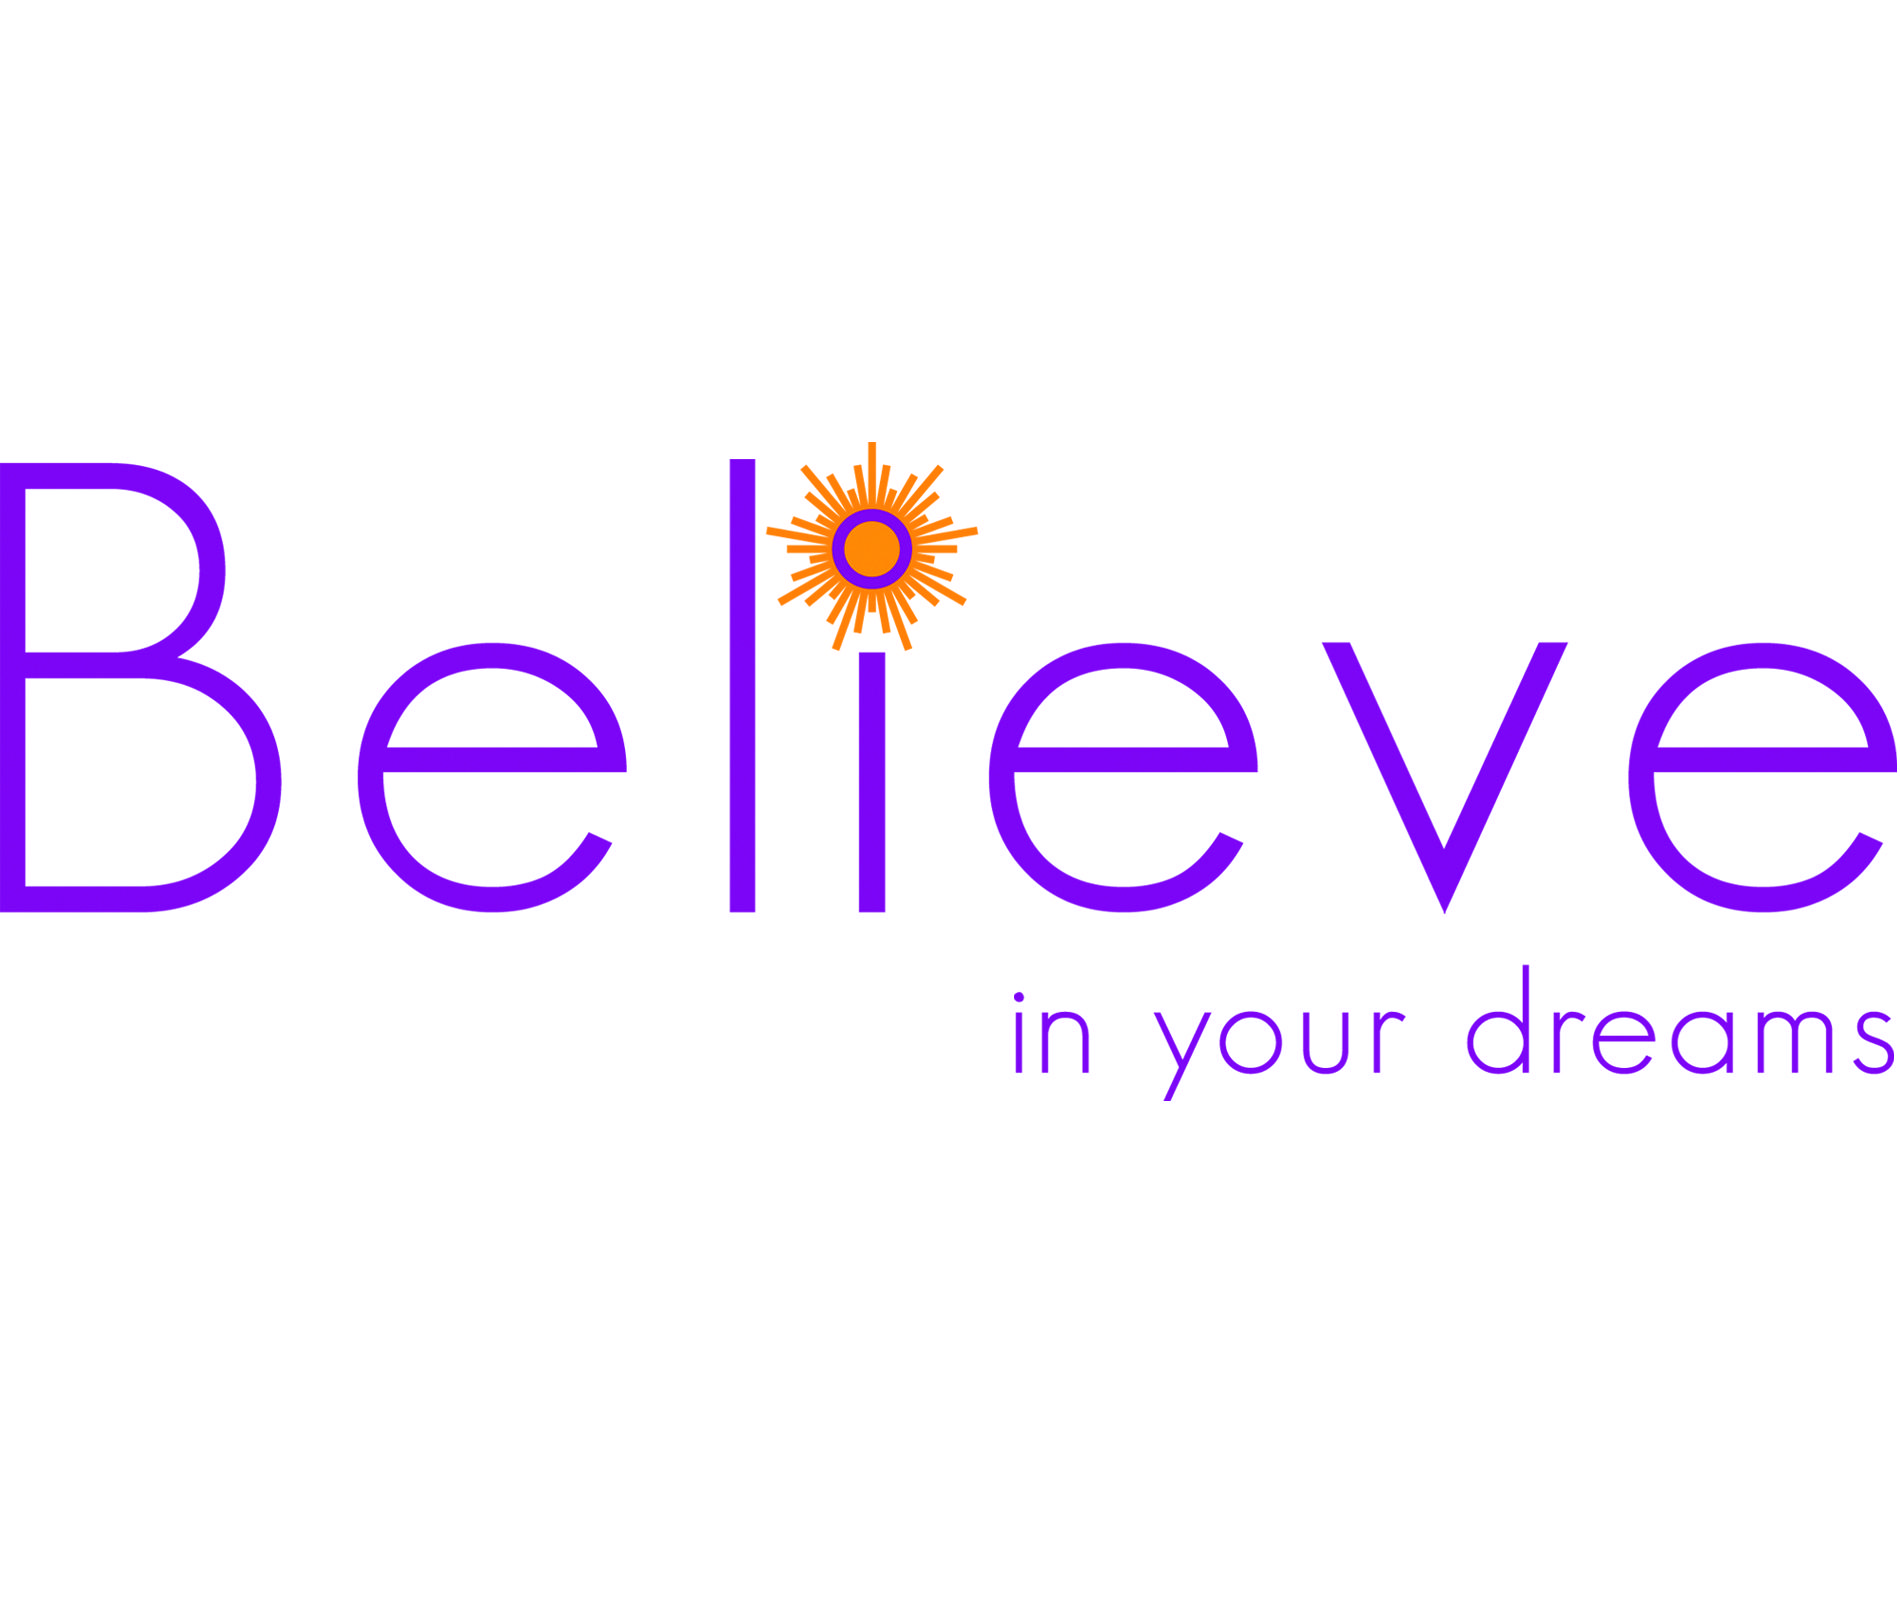 Believe Logo - Believe In Your Dreams. Believe in your dreams